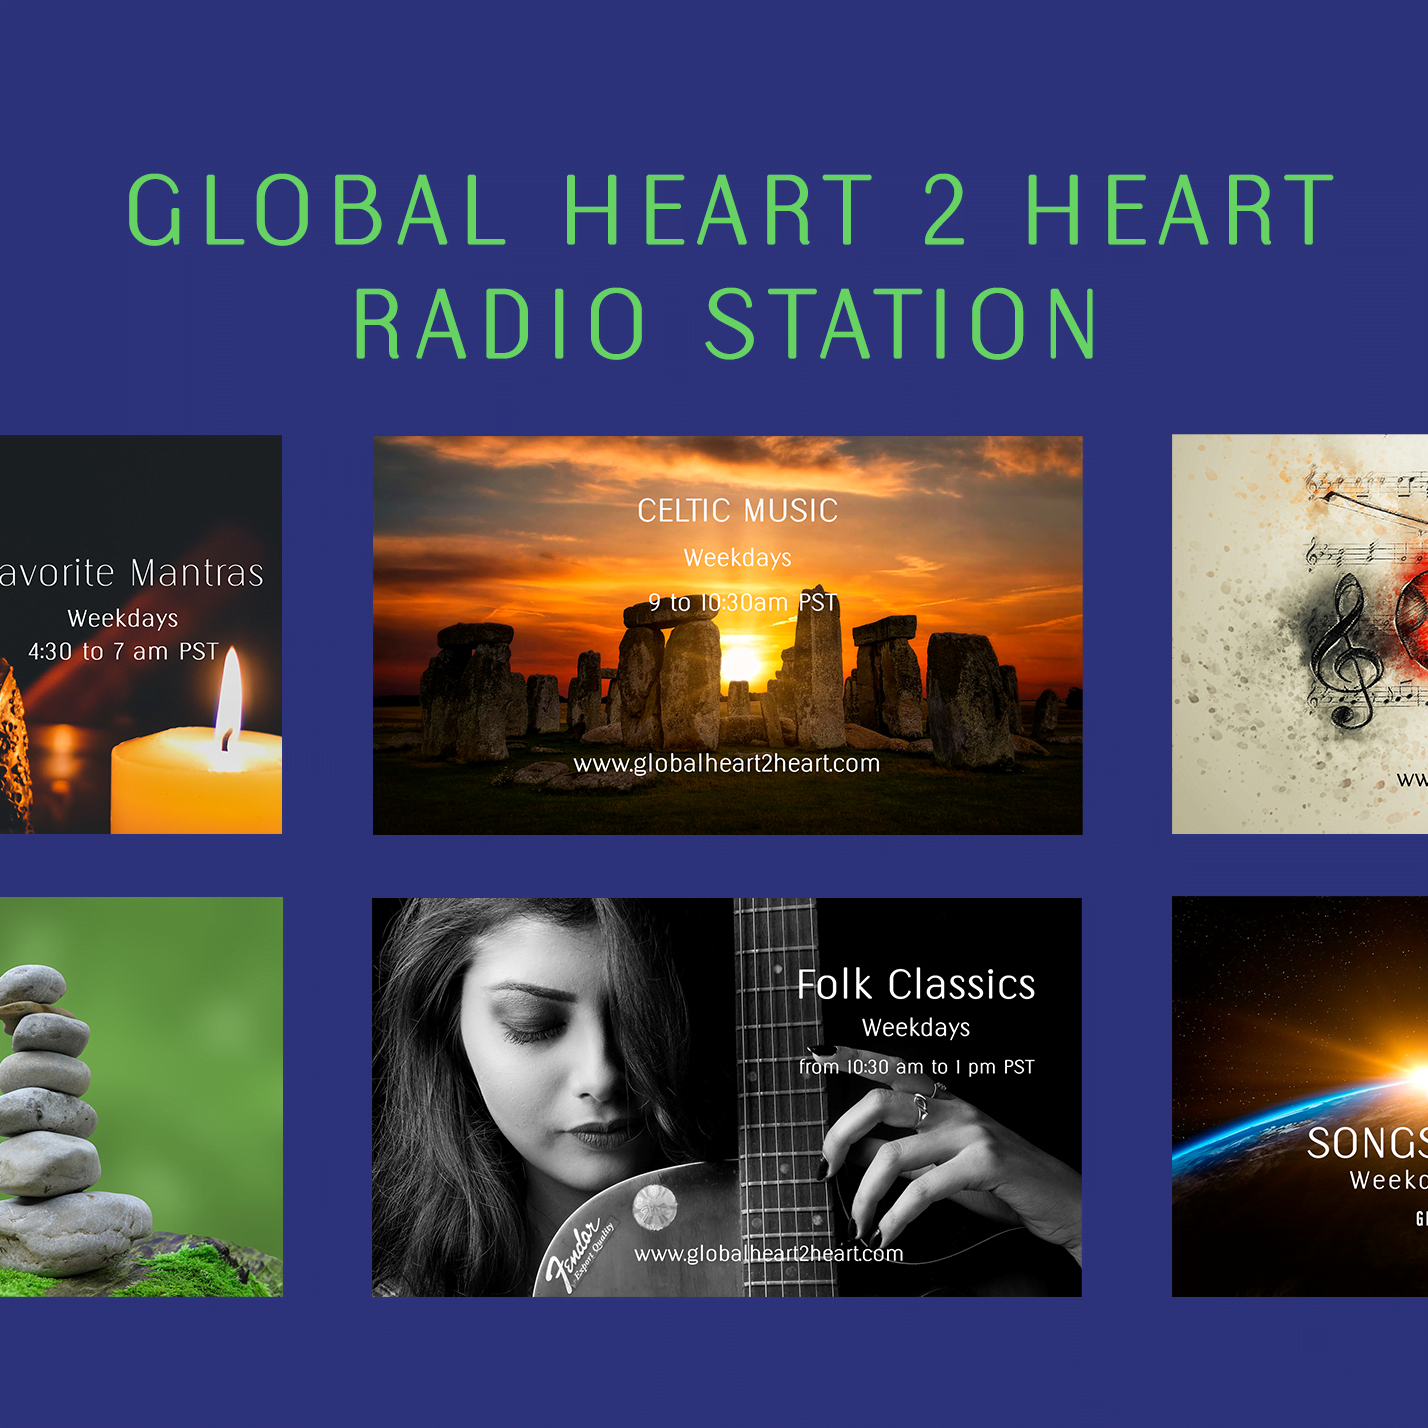 Global Heart 2 Heart Radio Schedule